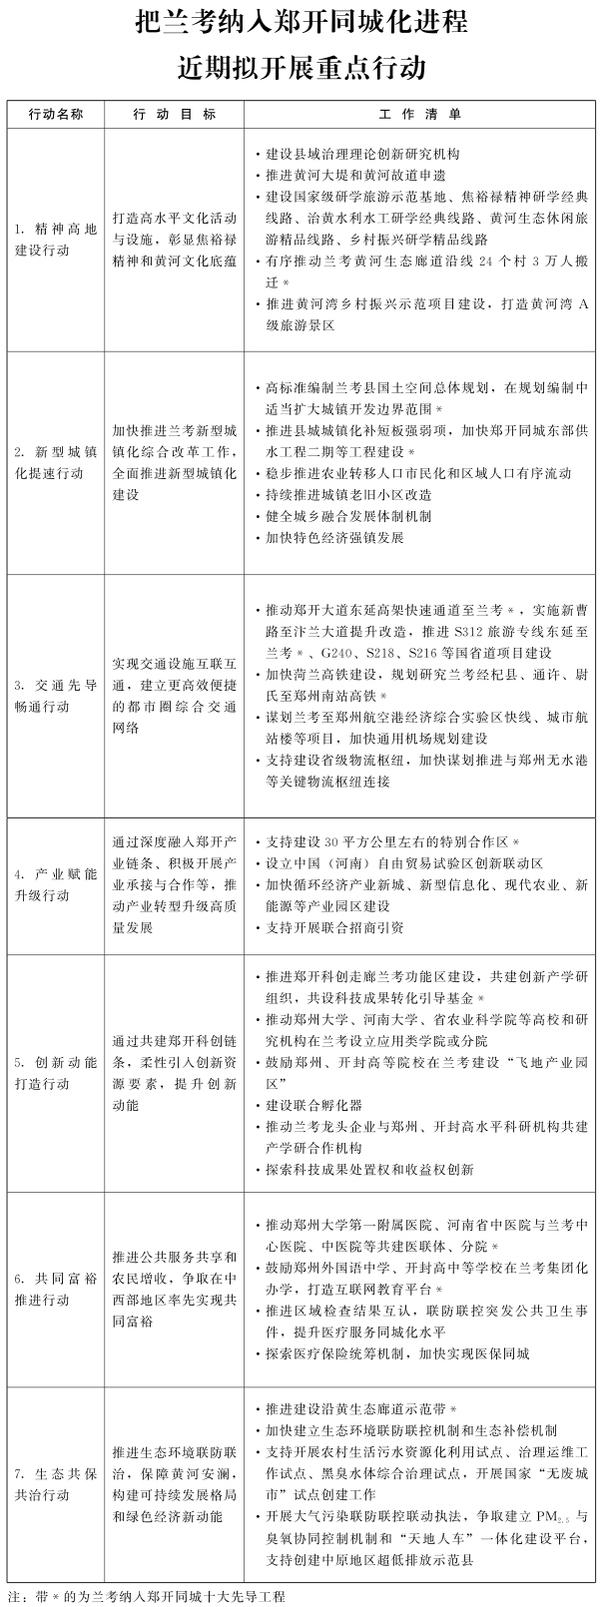 河南省政府發文 蘭考納入鄭開同城化方案公佈